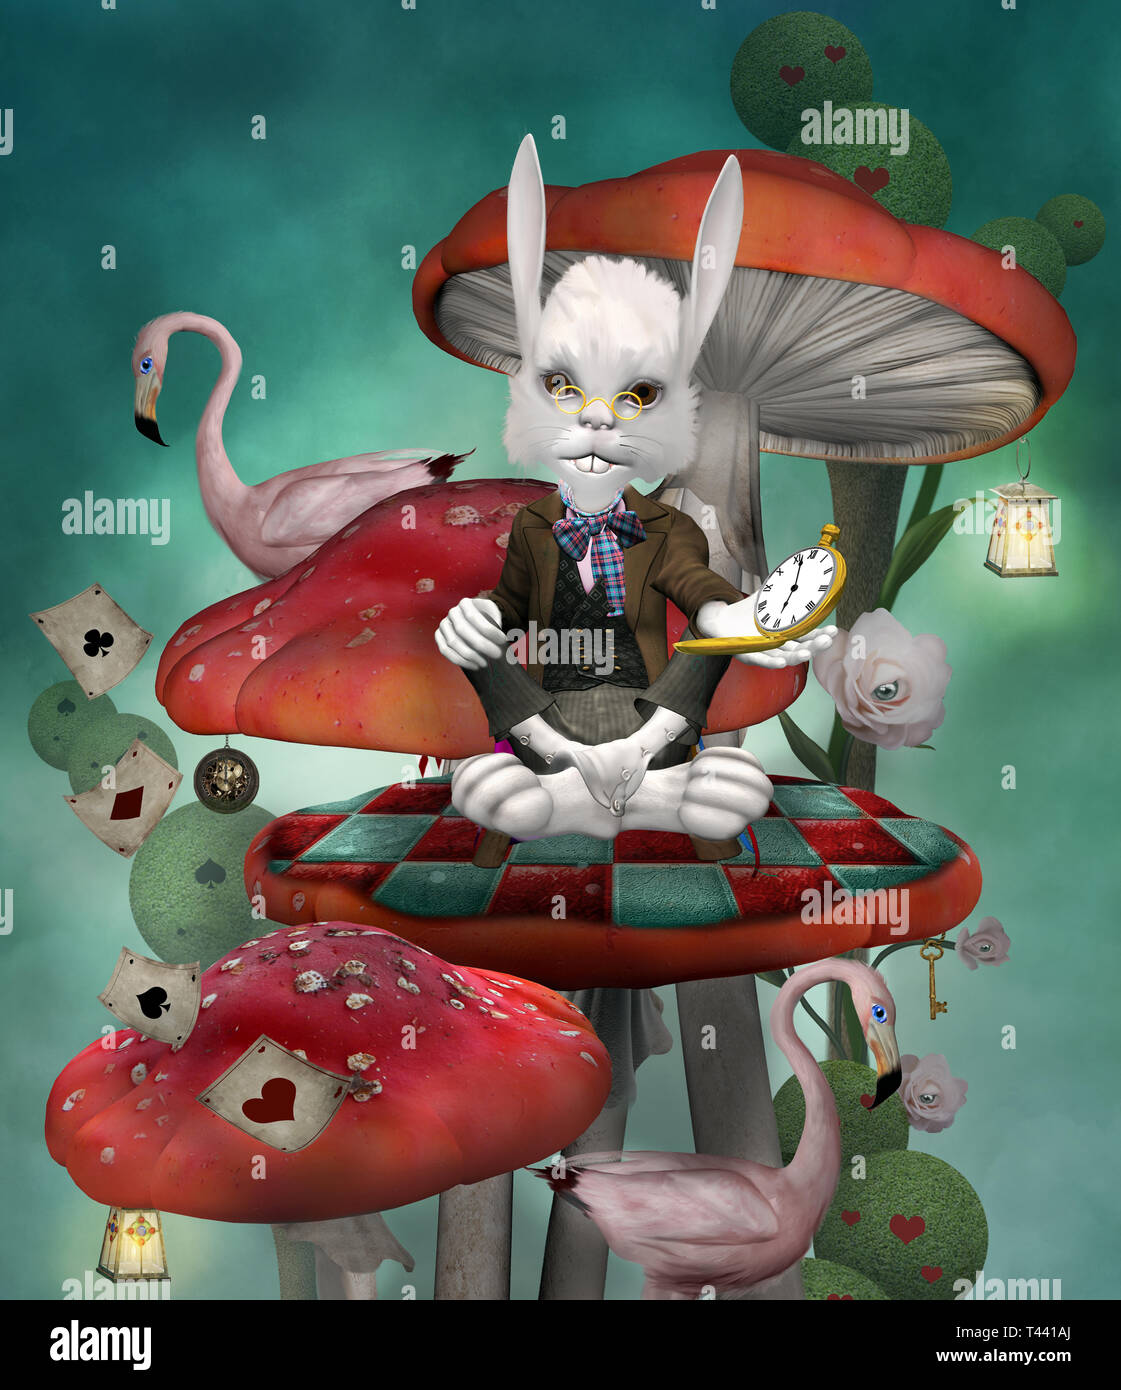 Avec un réveil lapin assis sur un champignon rouge dans un paysage fantastique Banque D'Images